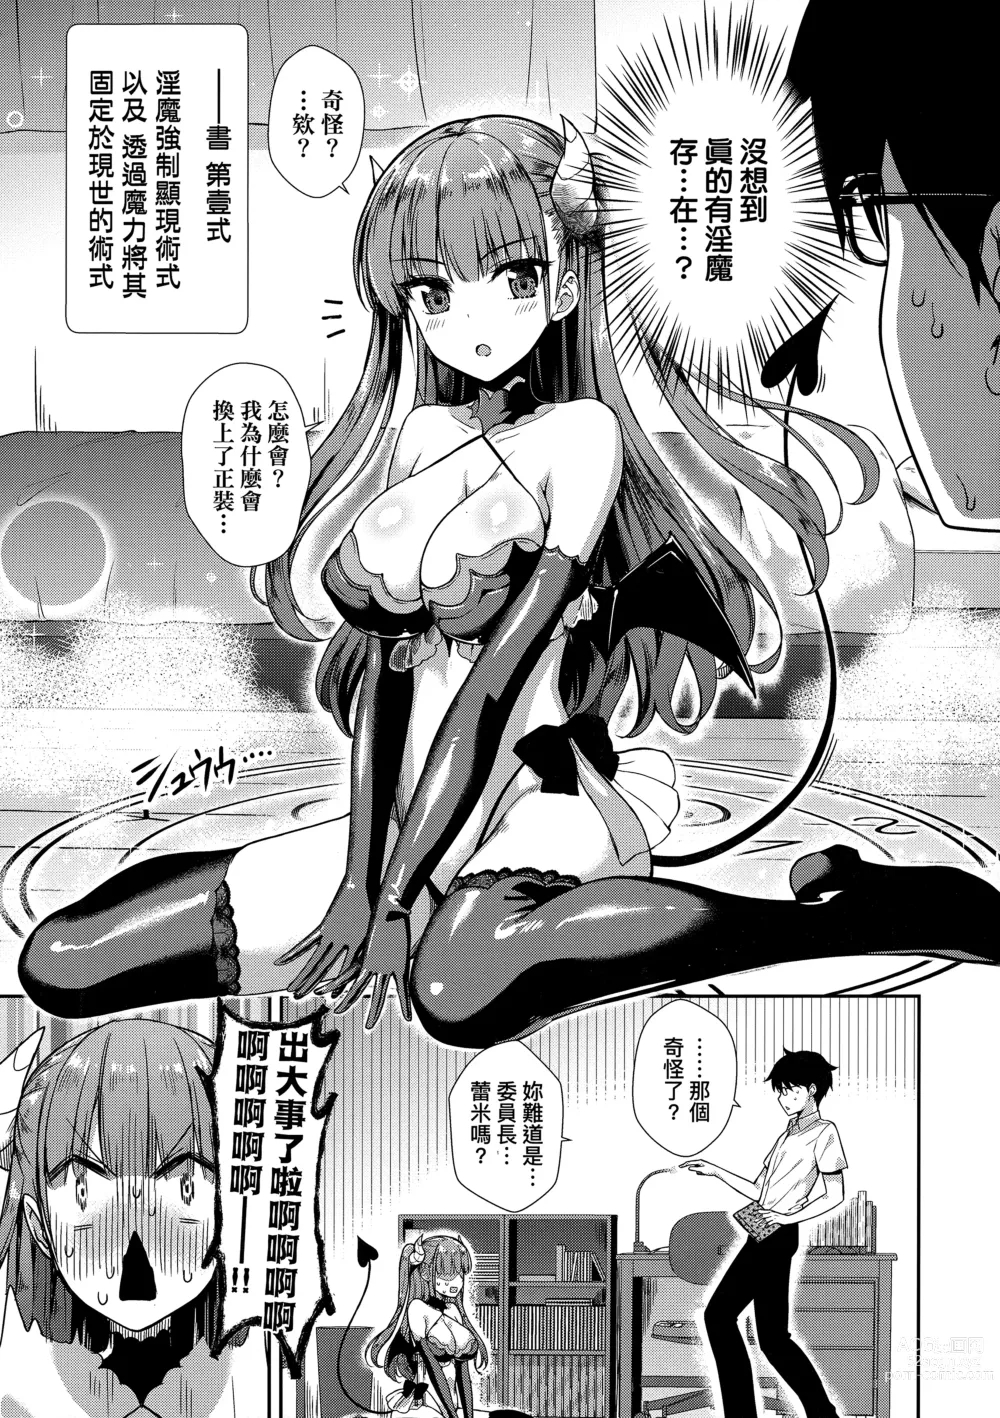 Page 30 of manga 鄰居家的傲嬌淫魔美眉 (decensored)